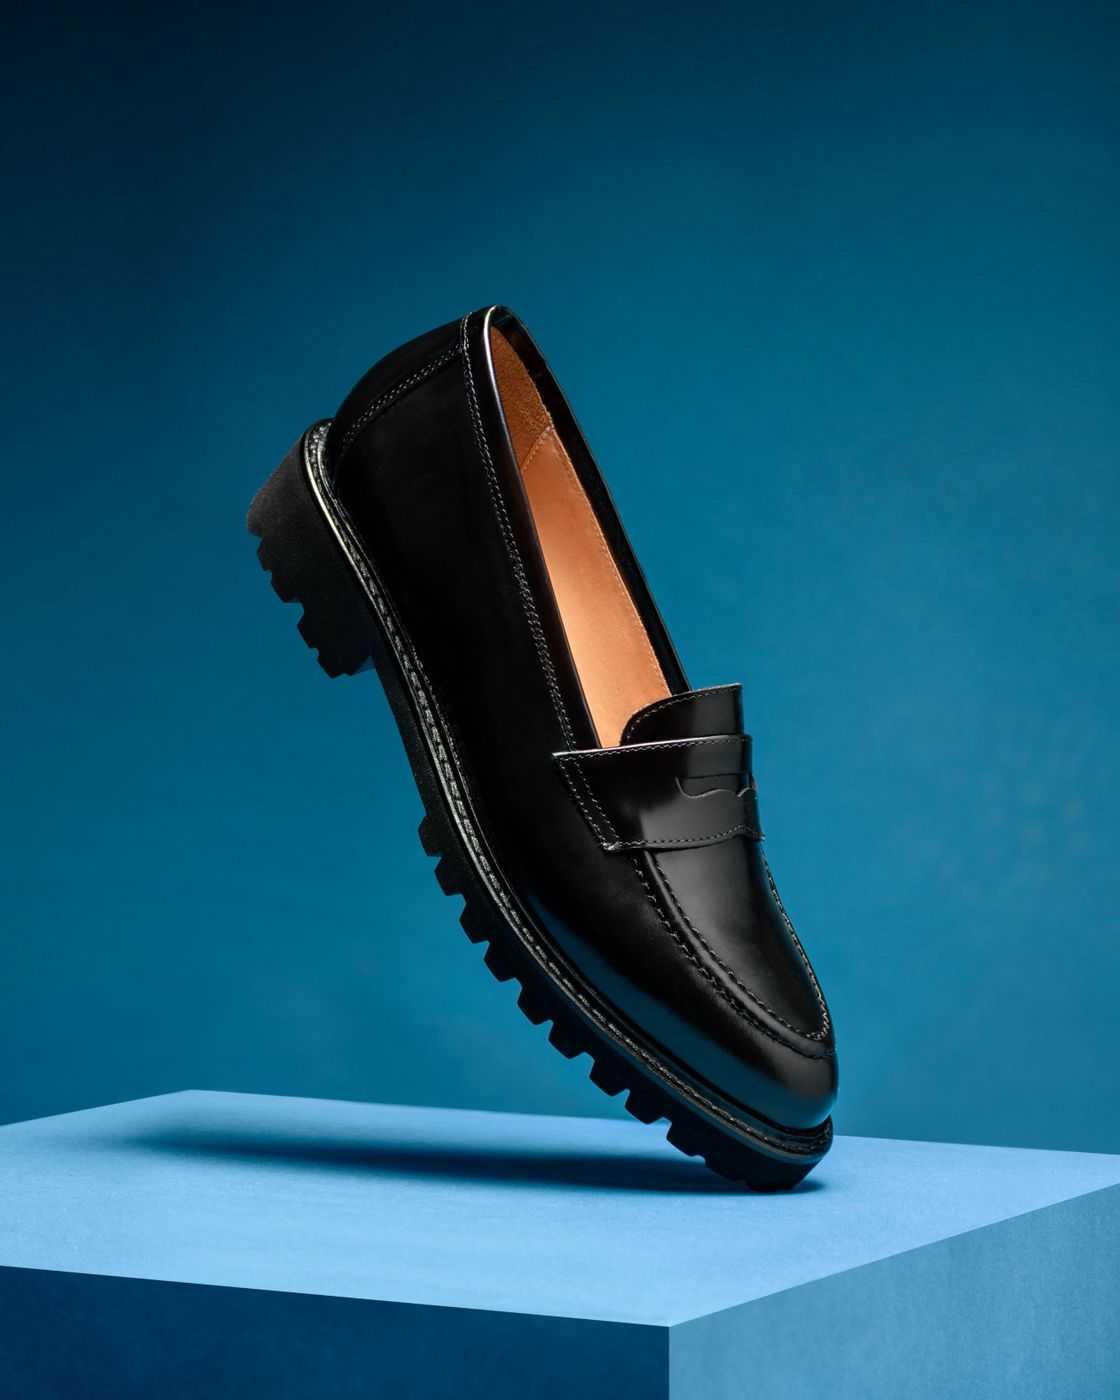 Men's Shoes | Men's Dress Shoes & Casual Shoes | The Shoe Company